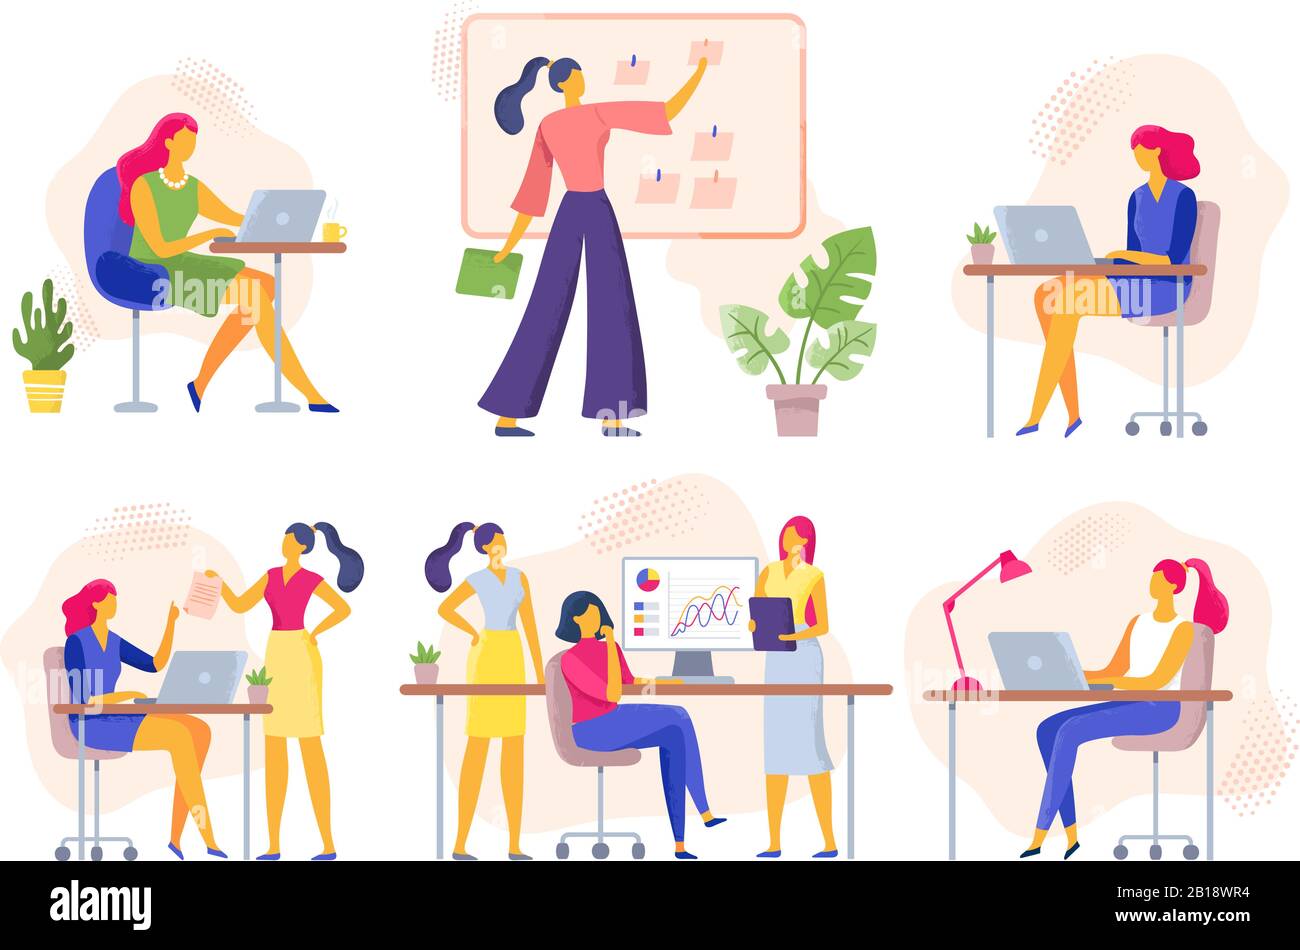 Büroangestellte. Business Woman hält Meetings ab, Frauen arbeiten zusammen und Geschäftsfrau mit Laptop Vector Illustration Stock Vektor